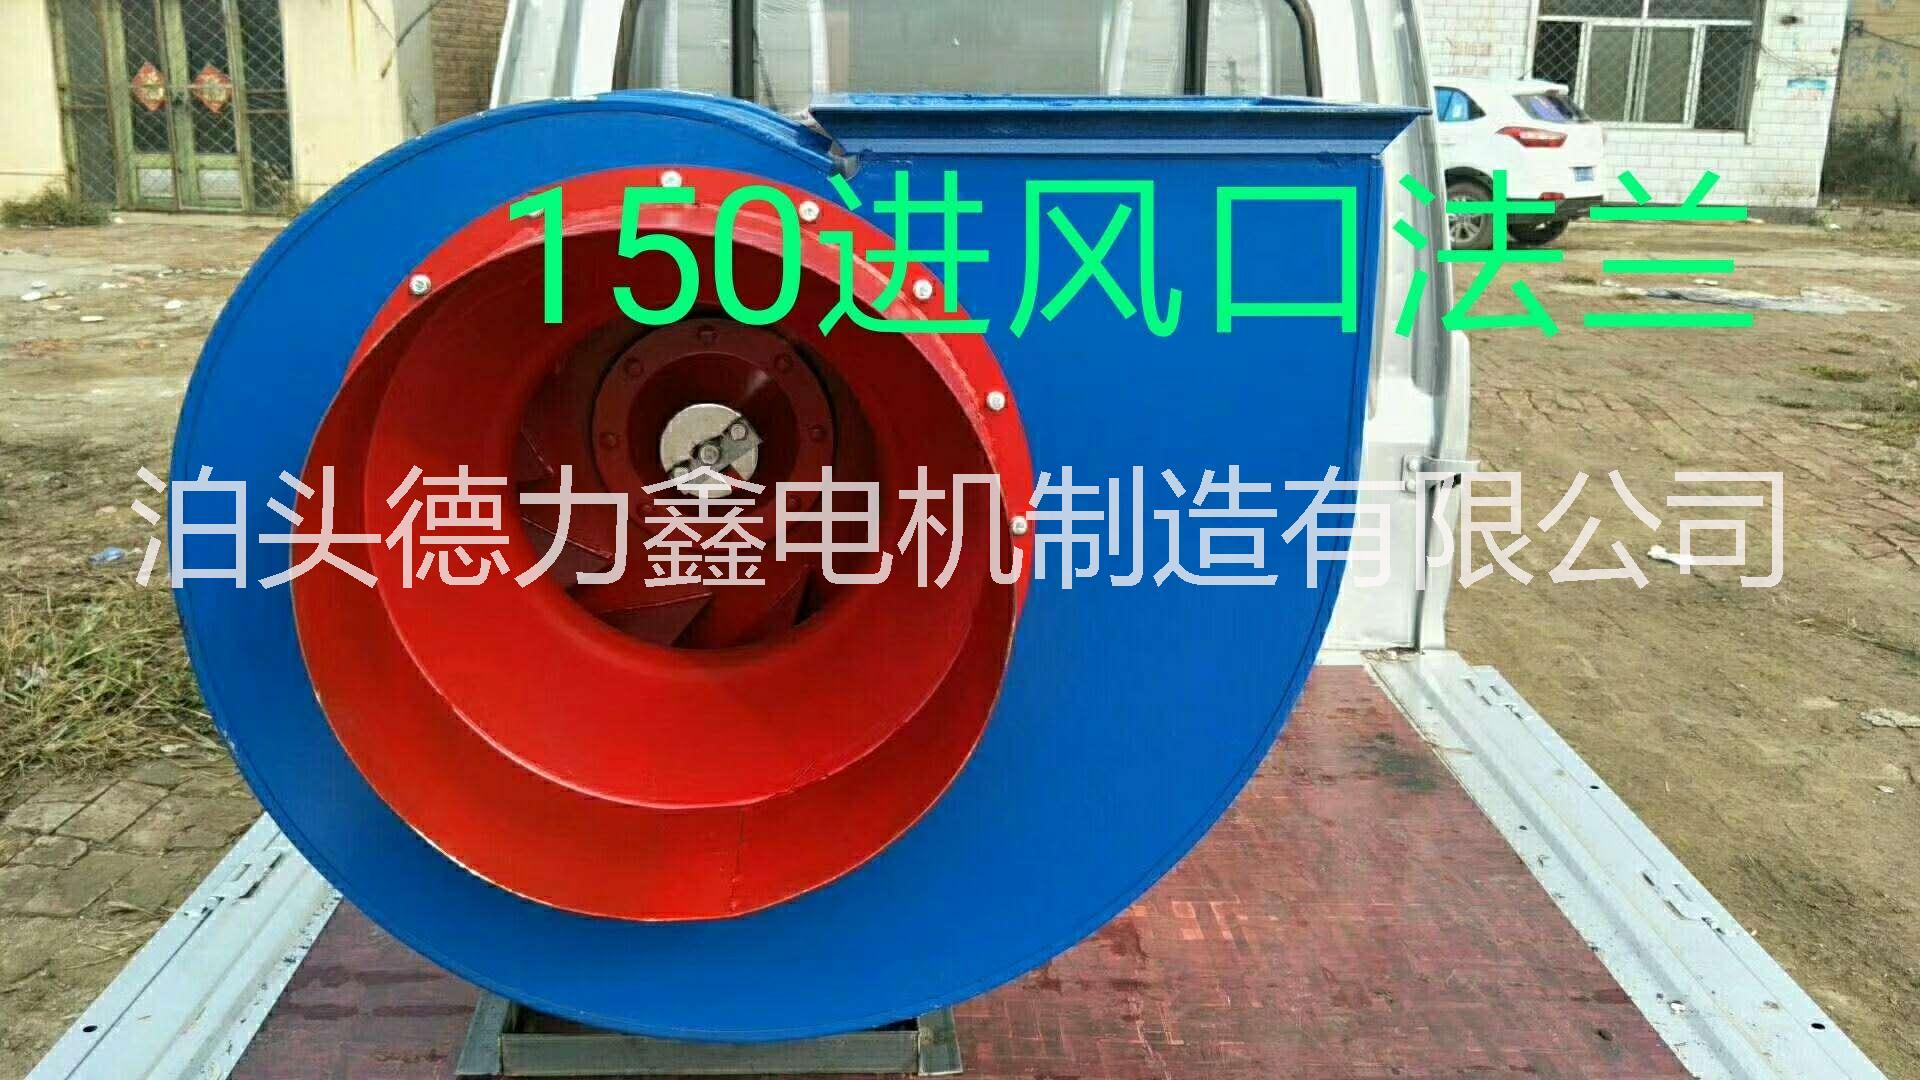 4-72,2.2KW风机河北沧州泊头电机厂家直销 4-72,2.2KW风机，铜包电机，除尘光氧风机，锅炉风机